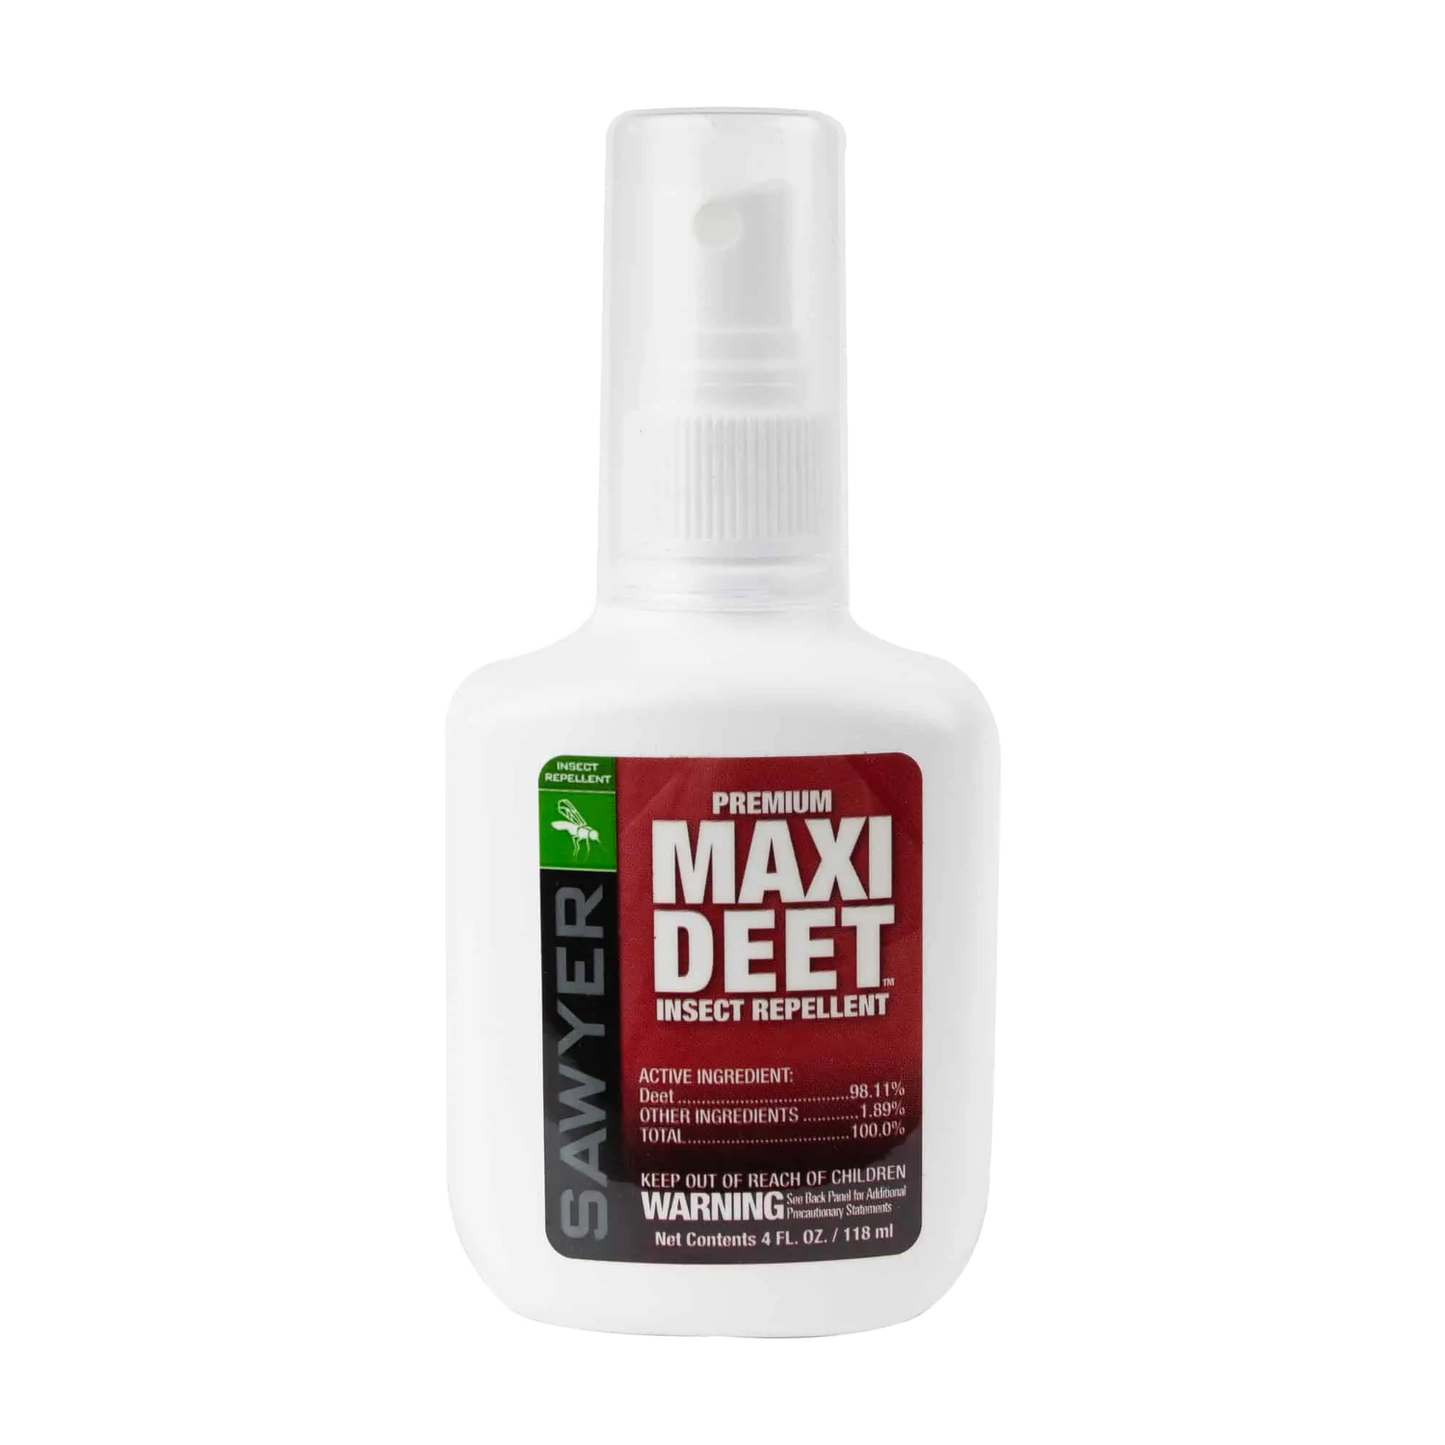 Maxi Deet Insect Repellent